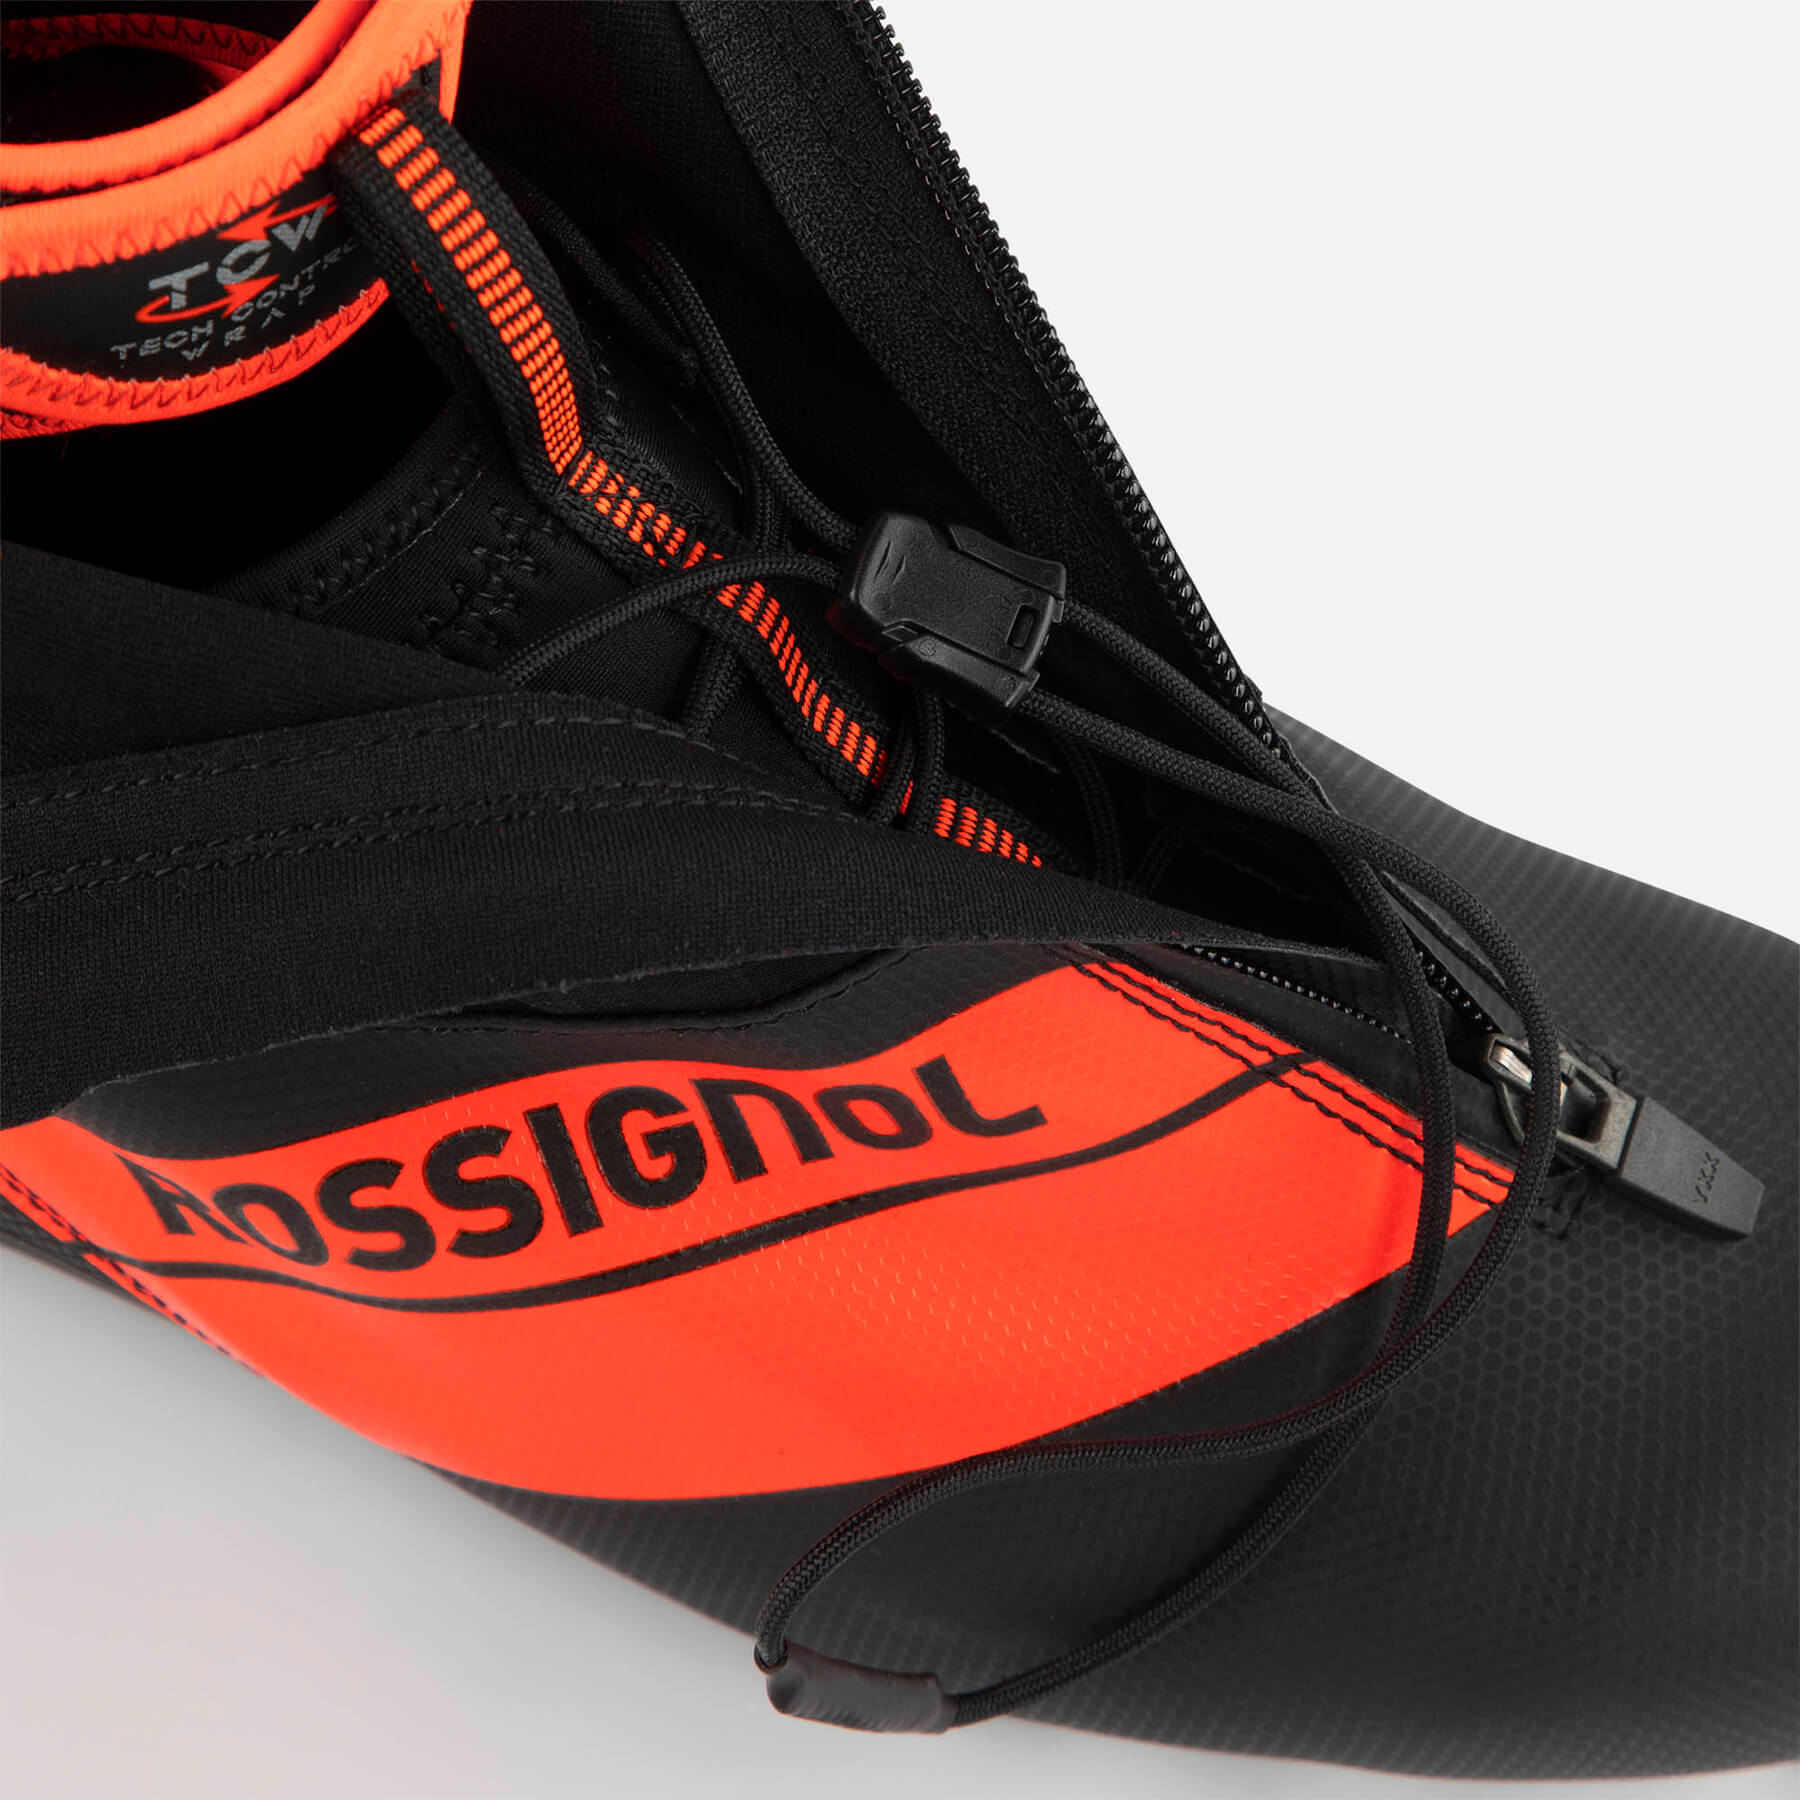 Rossignol X-10 Classic Boot